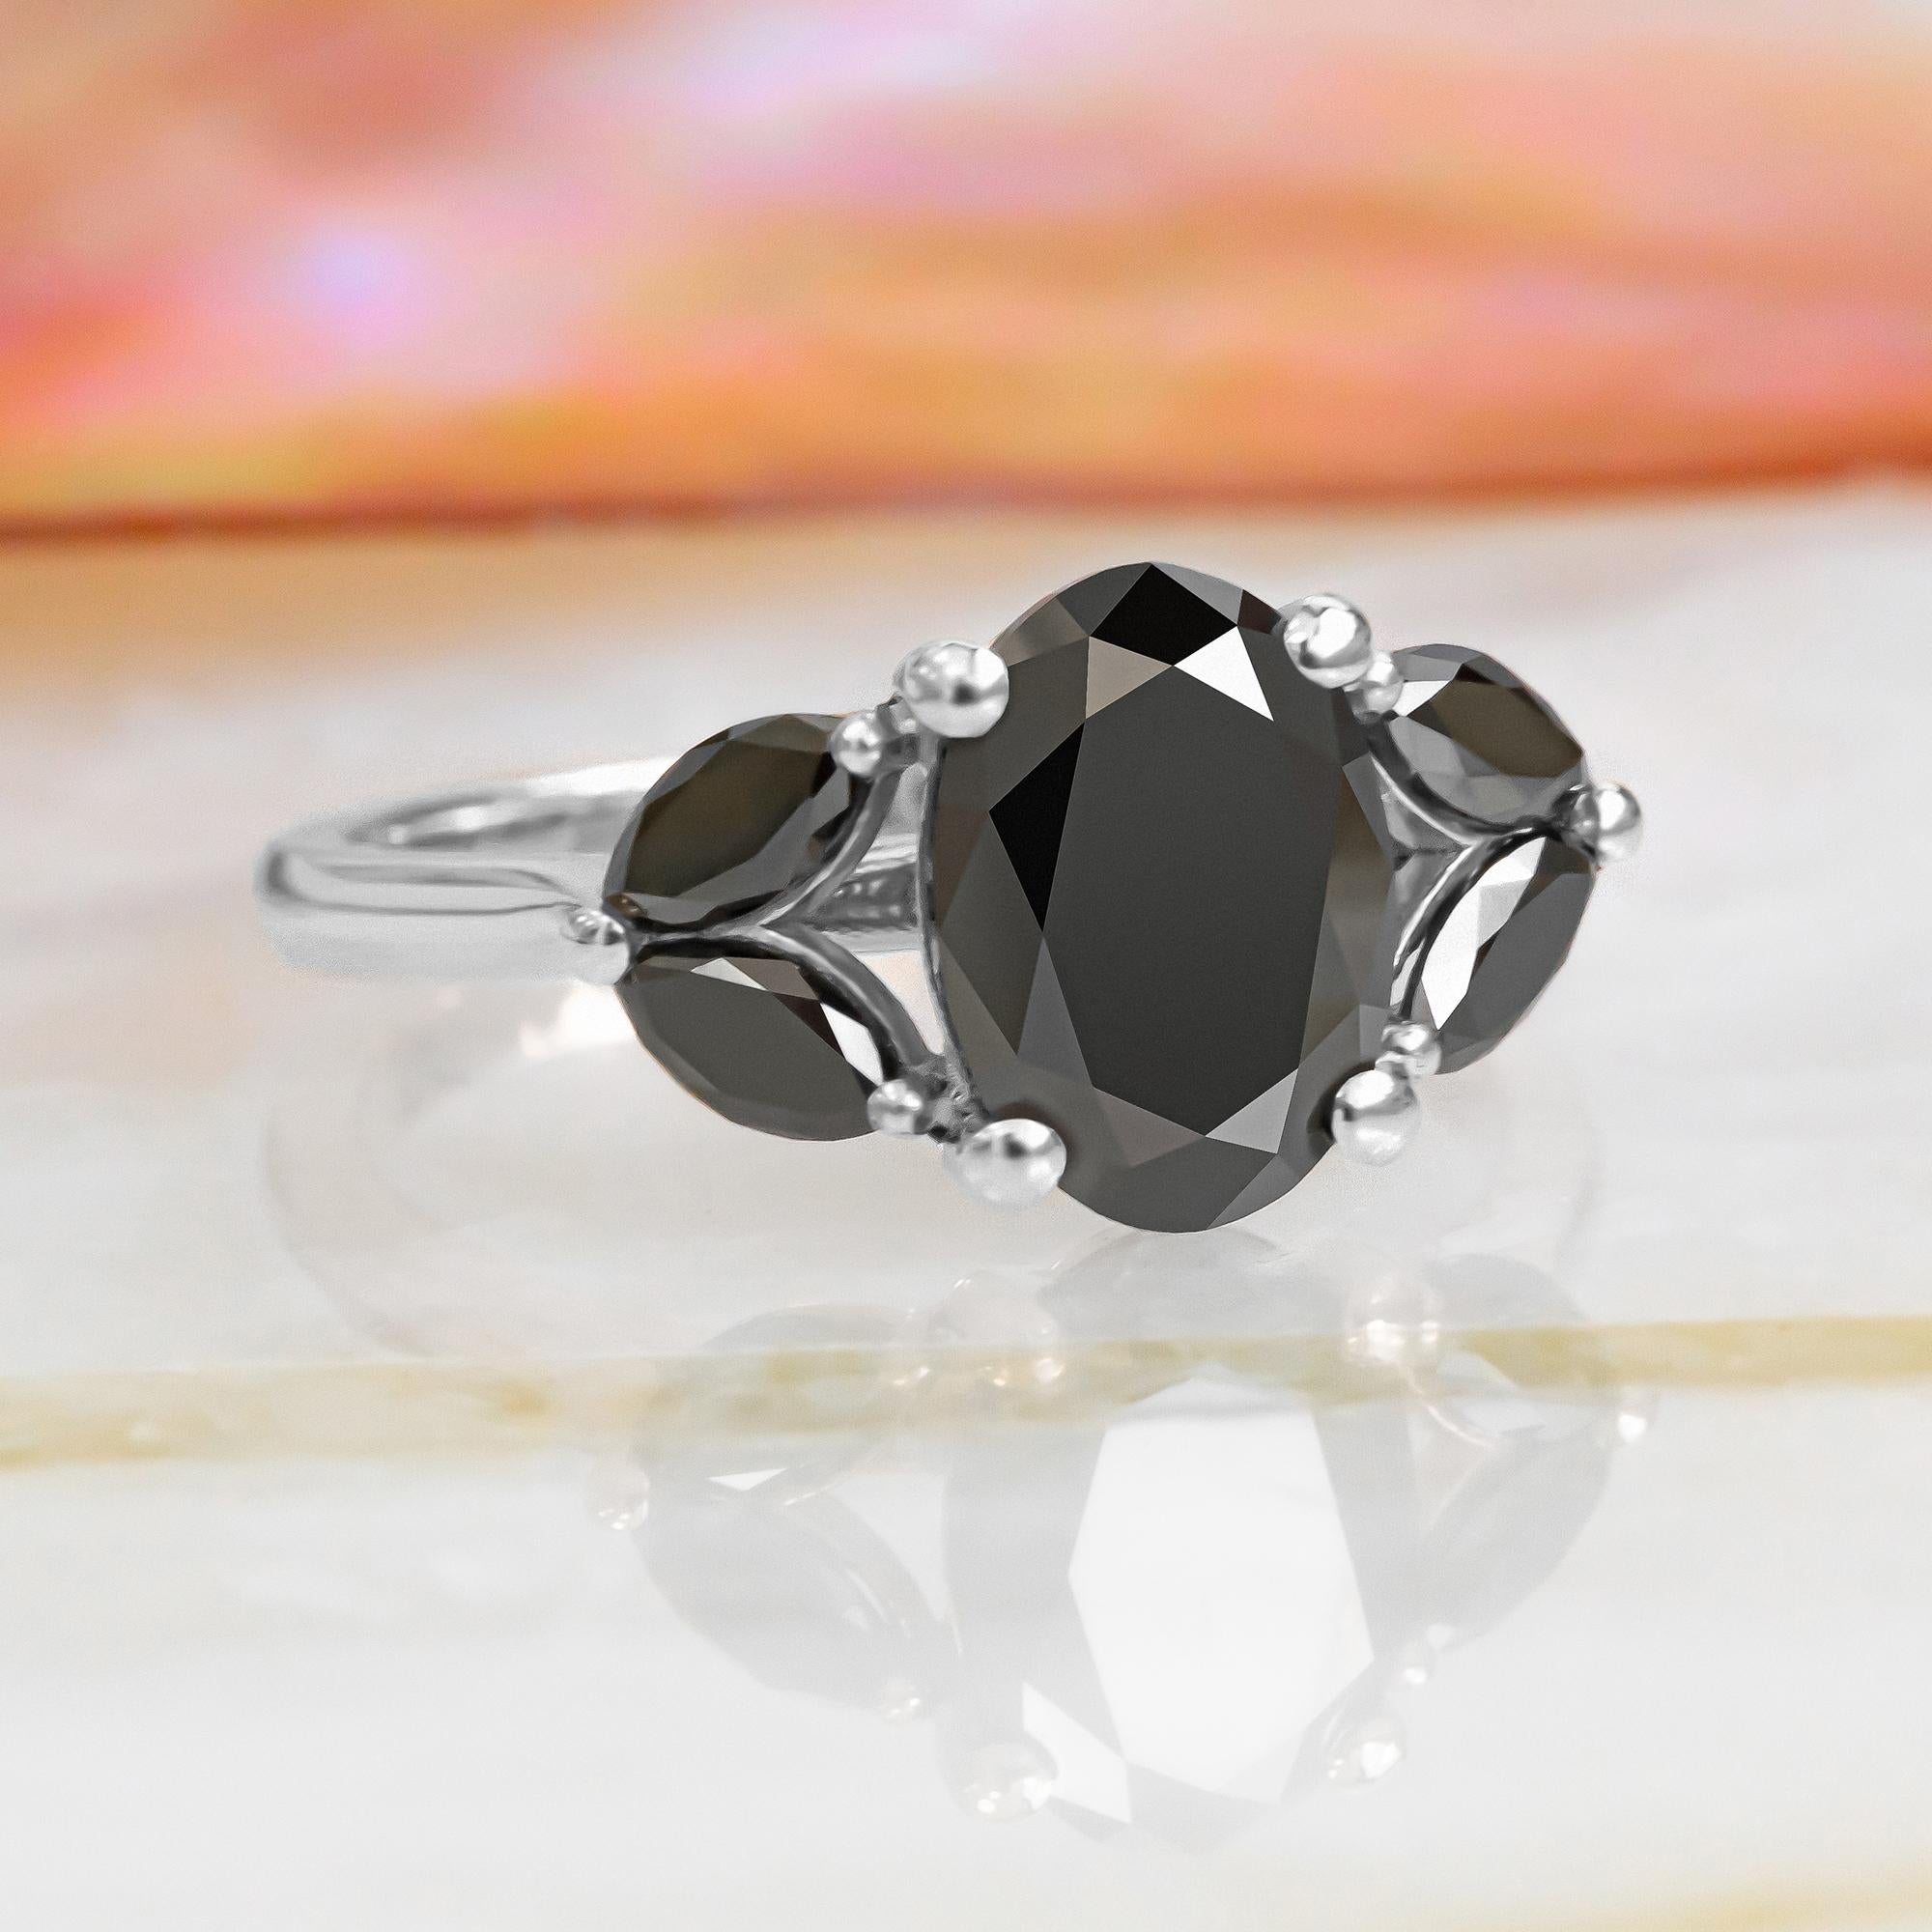 2.6 carat oval diamond ring